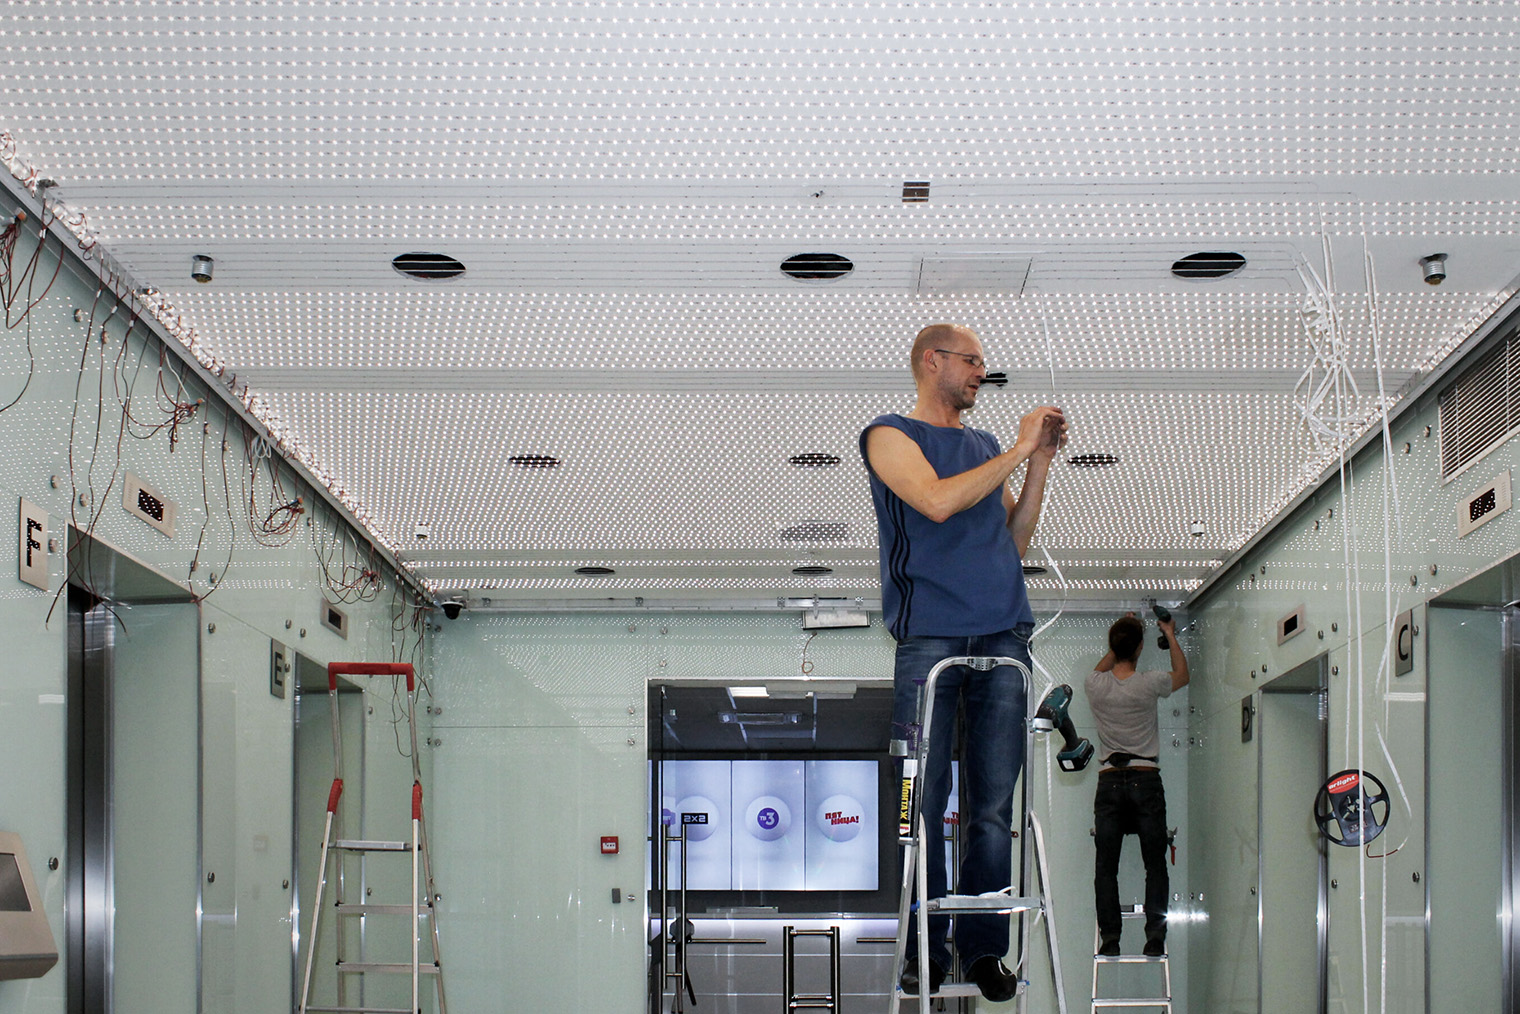 Тканевый натяжной потолок немецкой компании Pongs с подсветкой — такой установили в 2020 году в холле телеканала «Пятница». Фотография: pongs.com